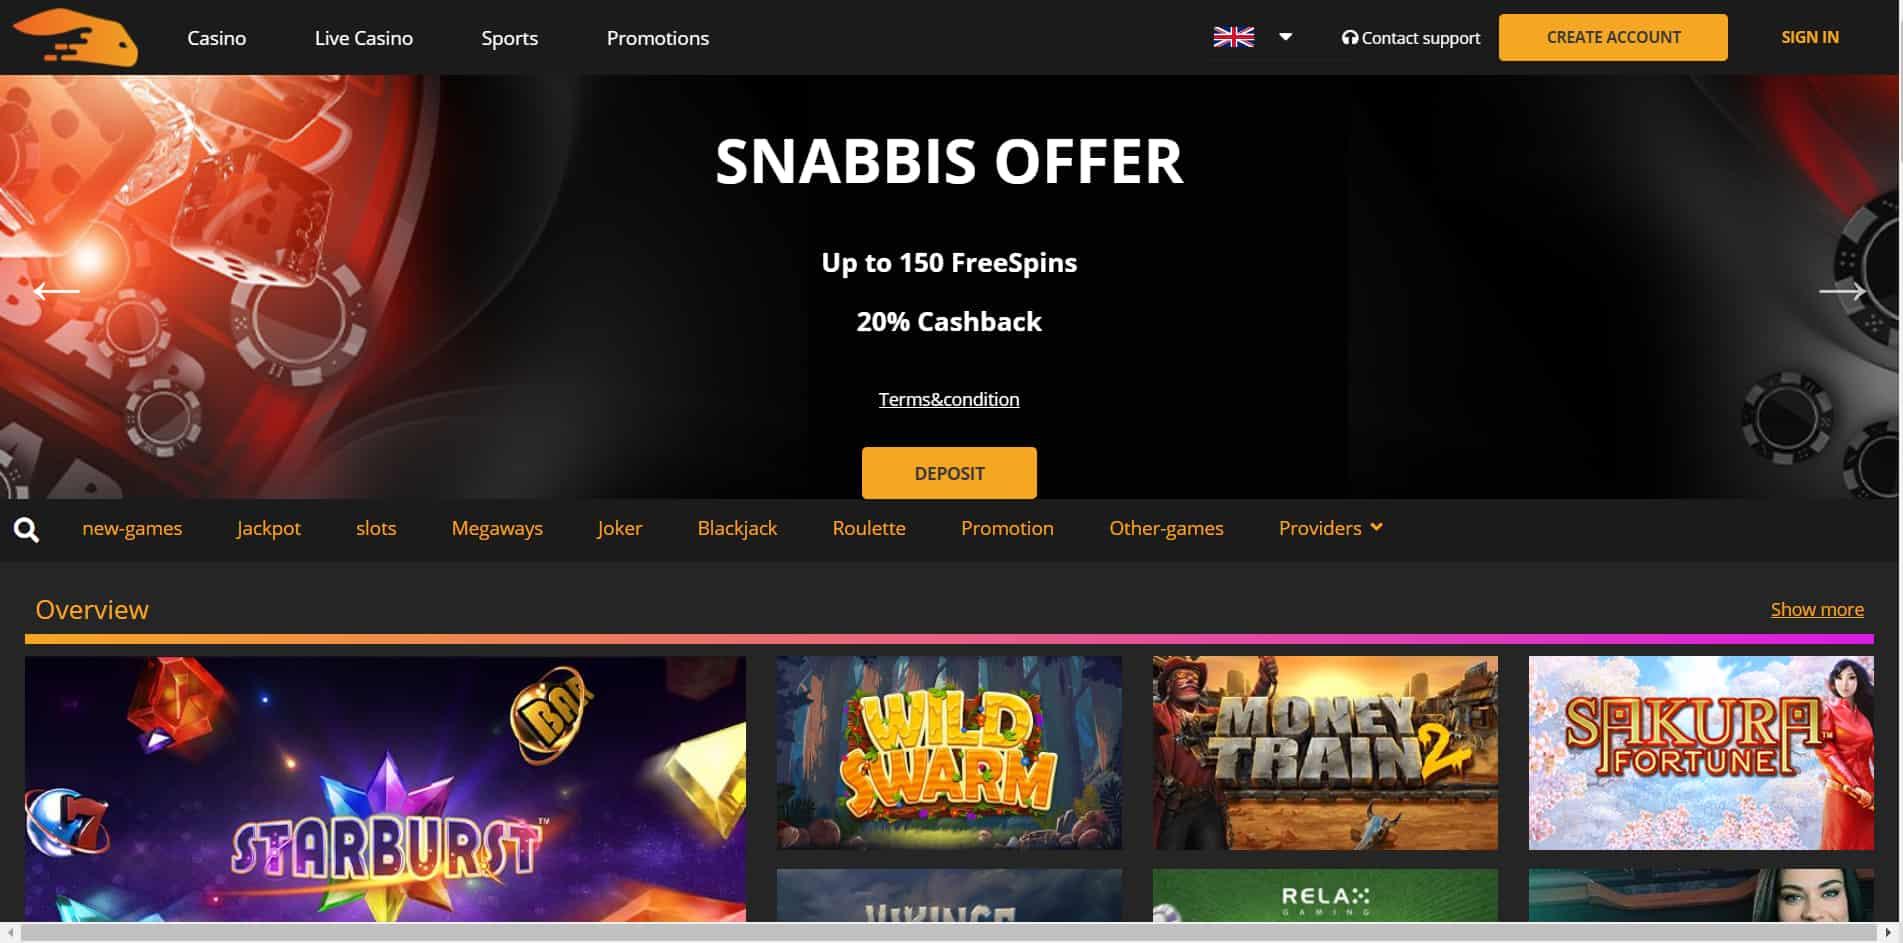 Snabbis casino homepage